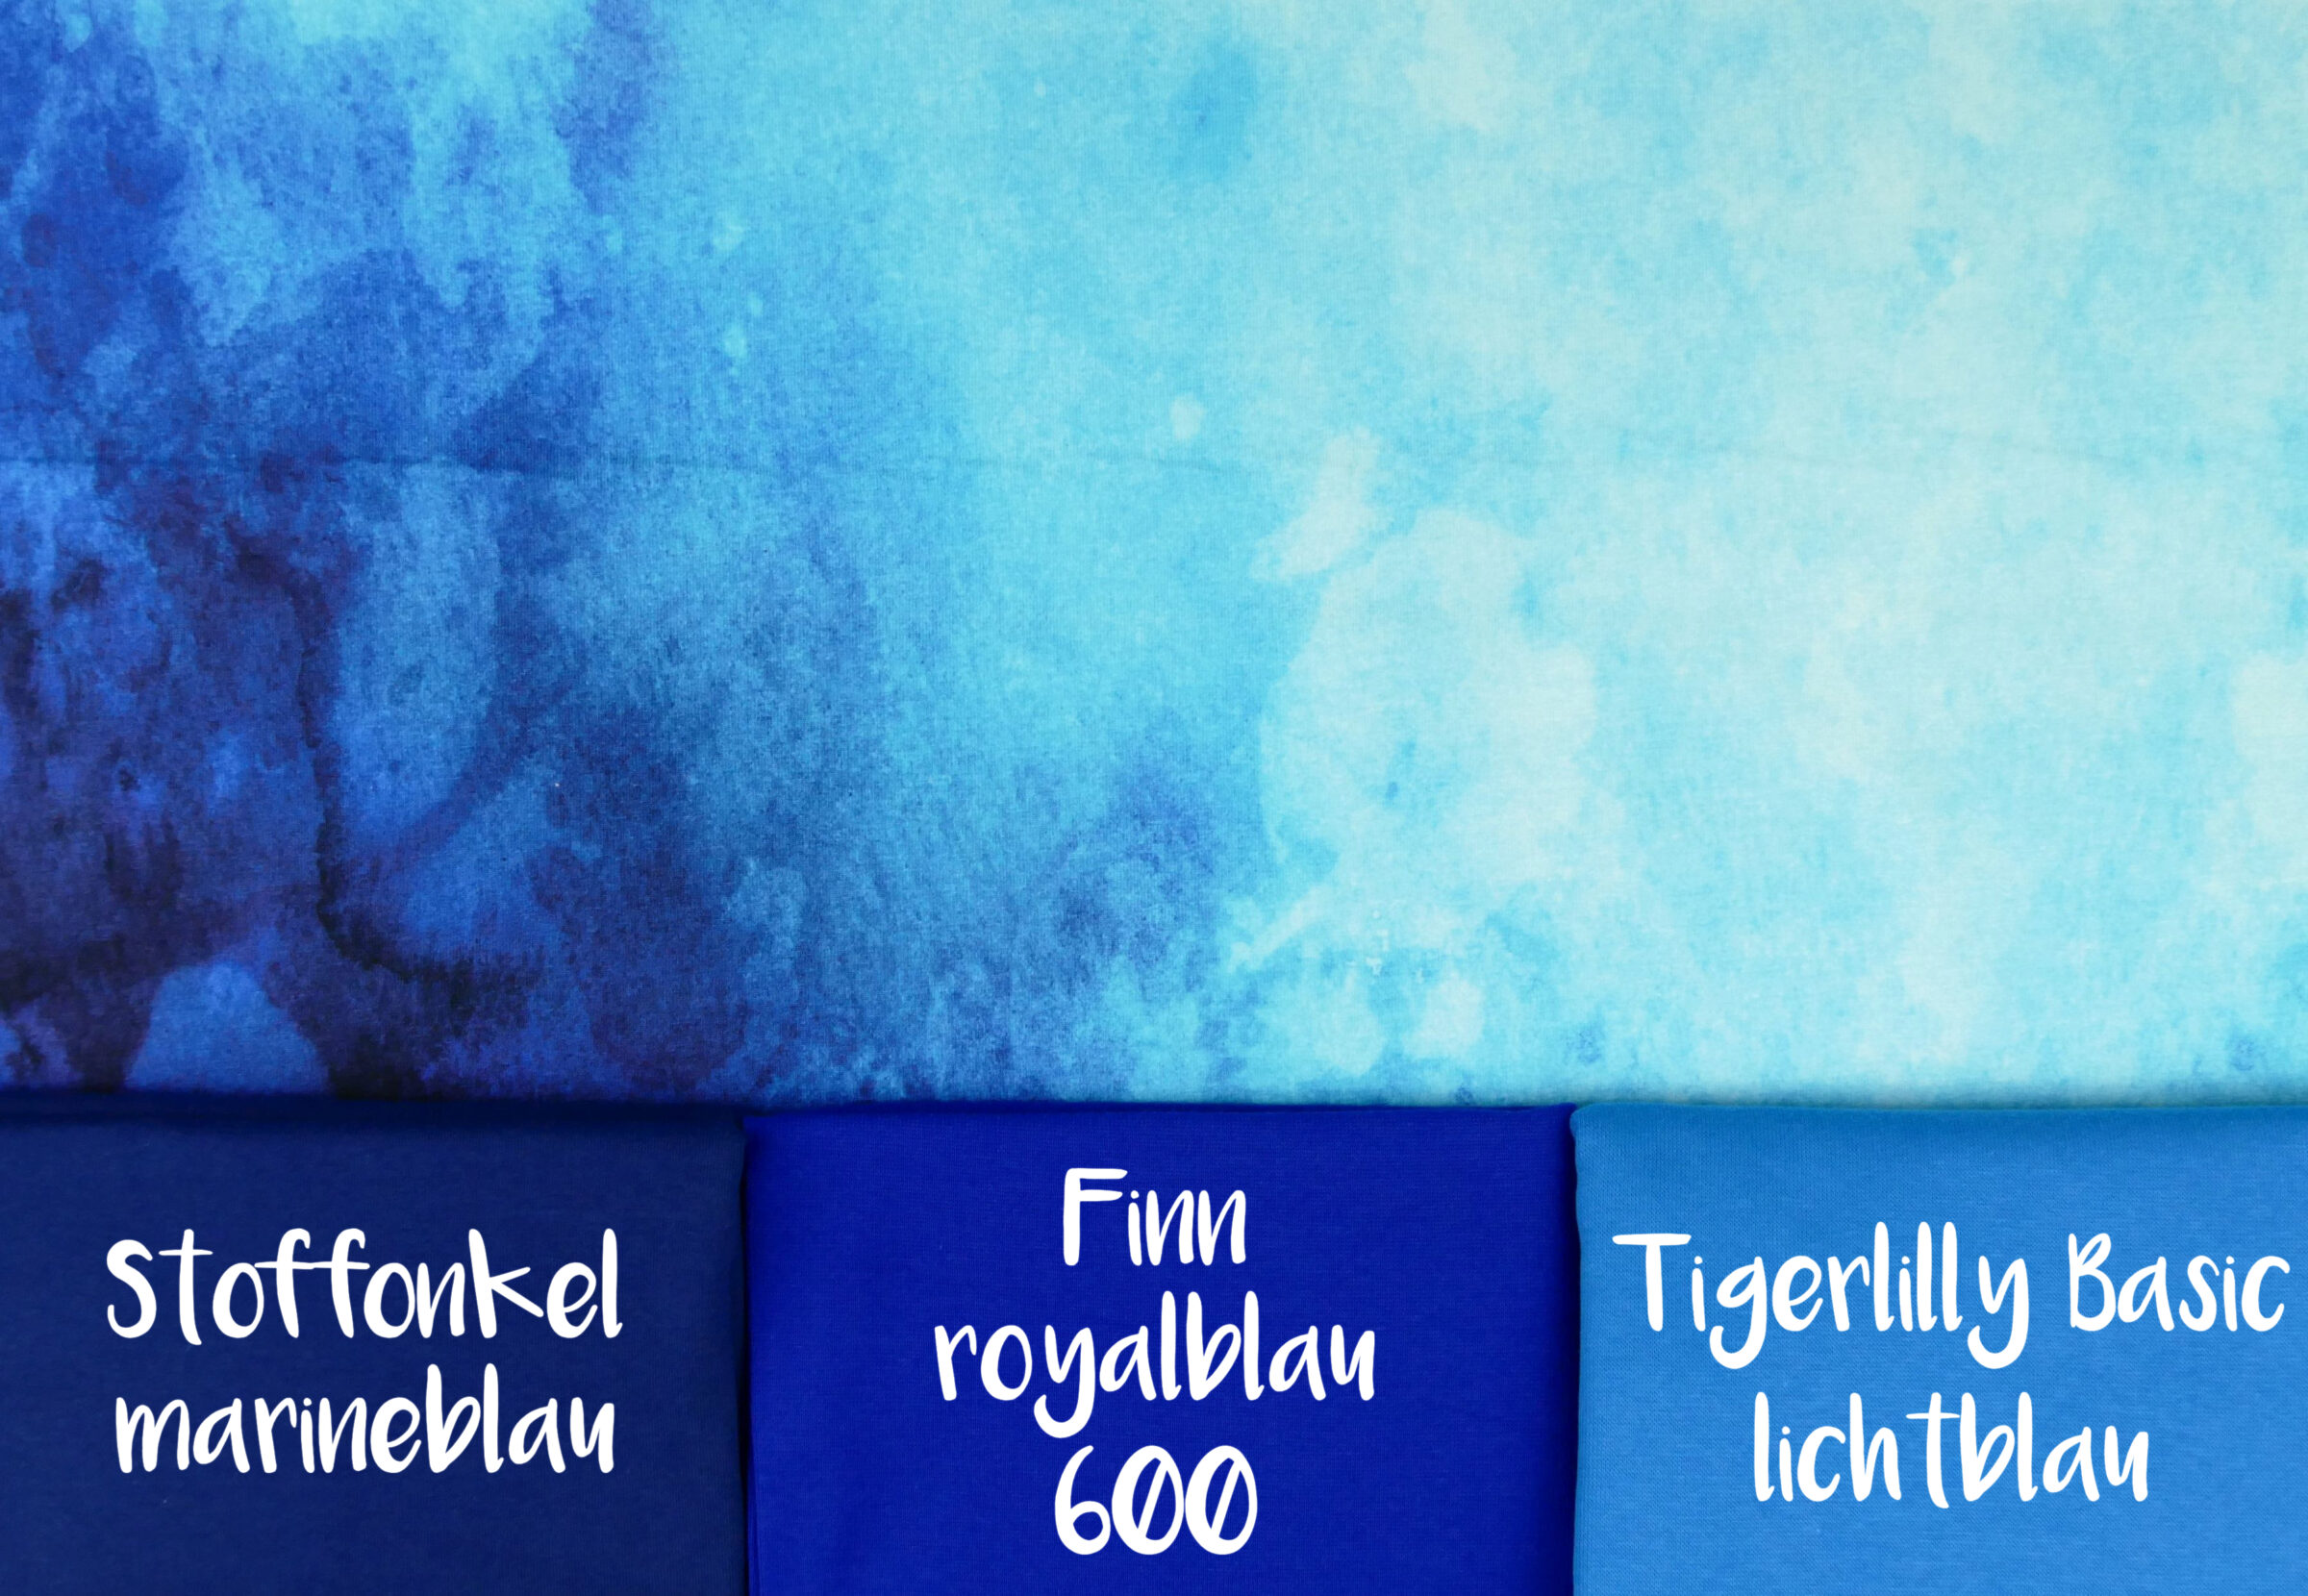 DeepBlue Sea Kombistoffe So Marineblau, Finn royalblau 600, tigerlilly basic lichtblaufertig